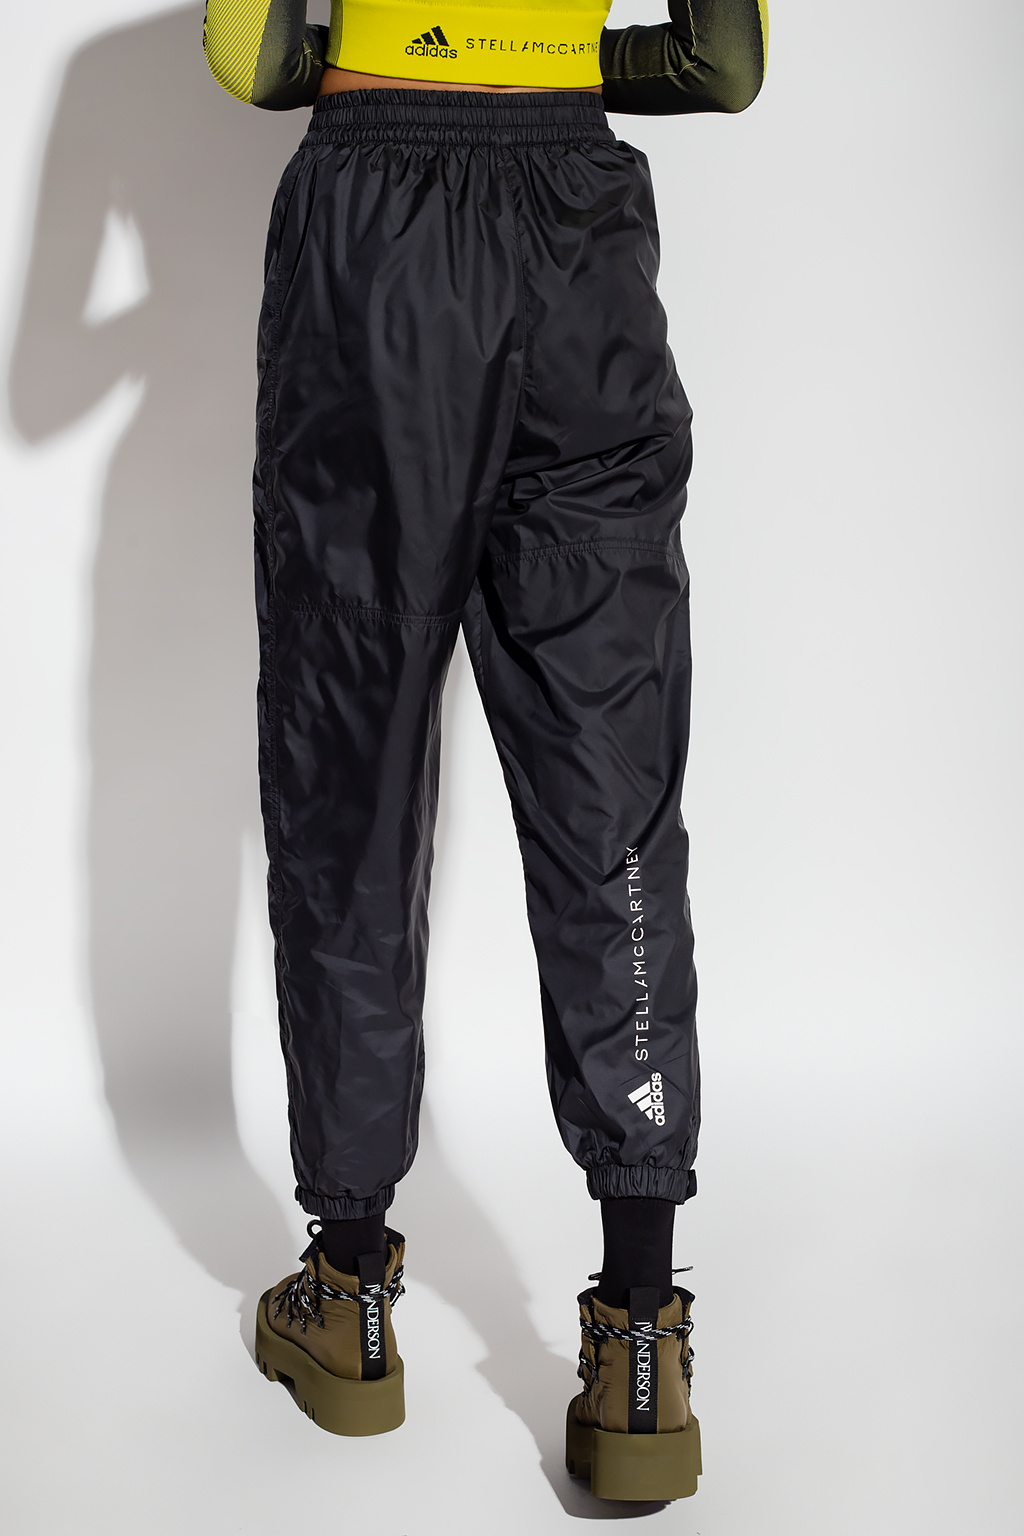 Artpoint Lightweight Black Satin Finish Cuffed Pants | TOKo Santa Fe